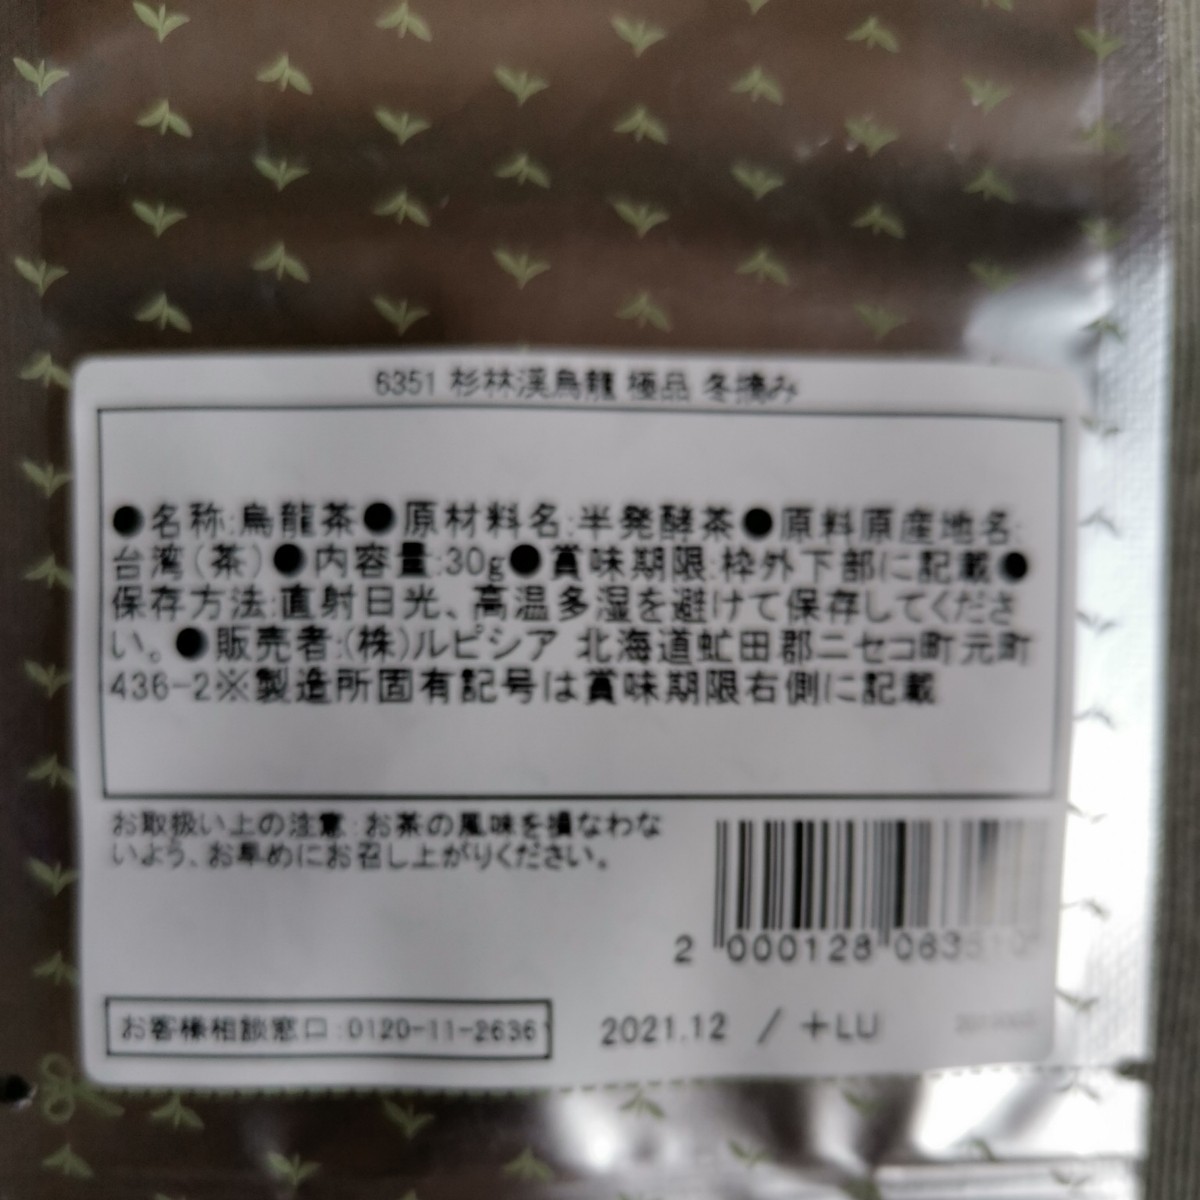 ルピシア 杉林渓烏龍 極品 冬摘み 上質な台湾高山茶 台湾烏龍